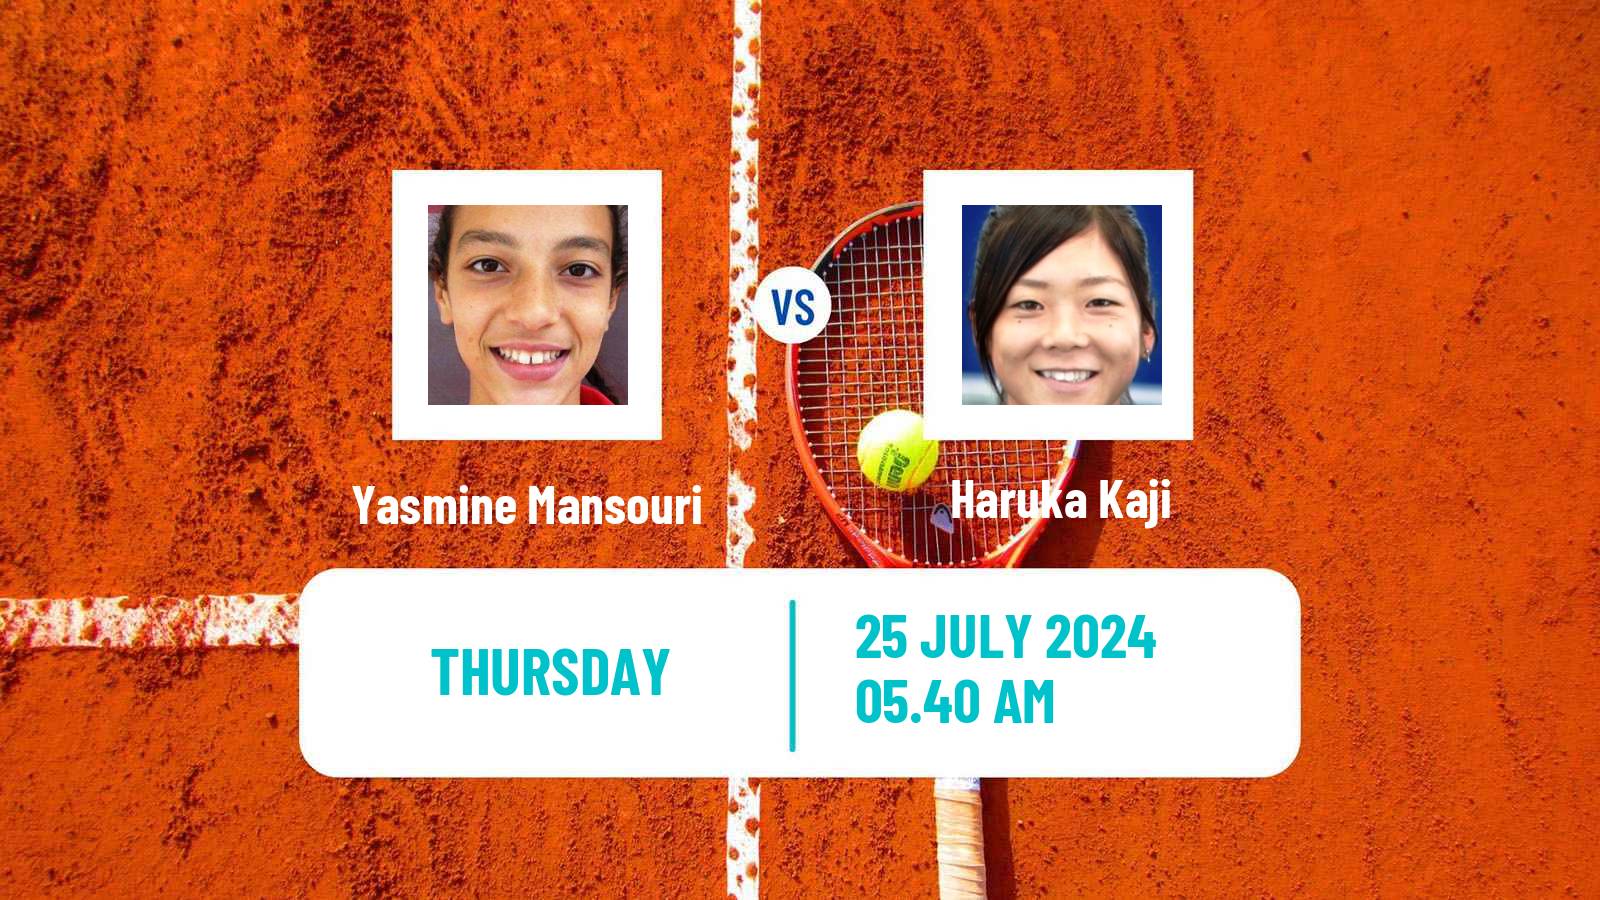 Tennis ITF W35 Segovia Women Yasmine Mansouri - Haruka Kaji